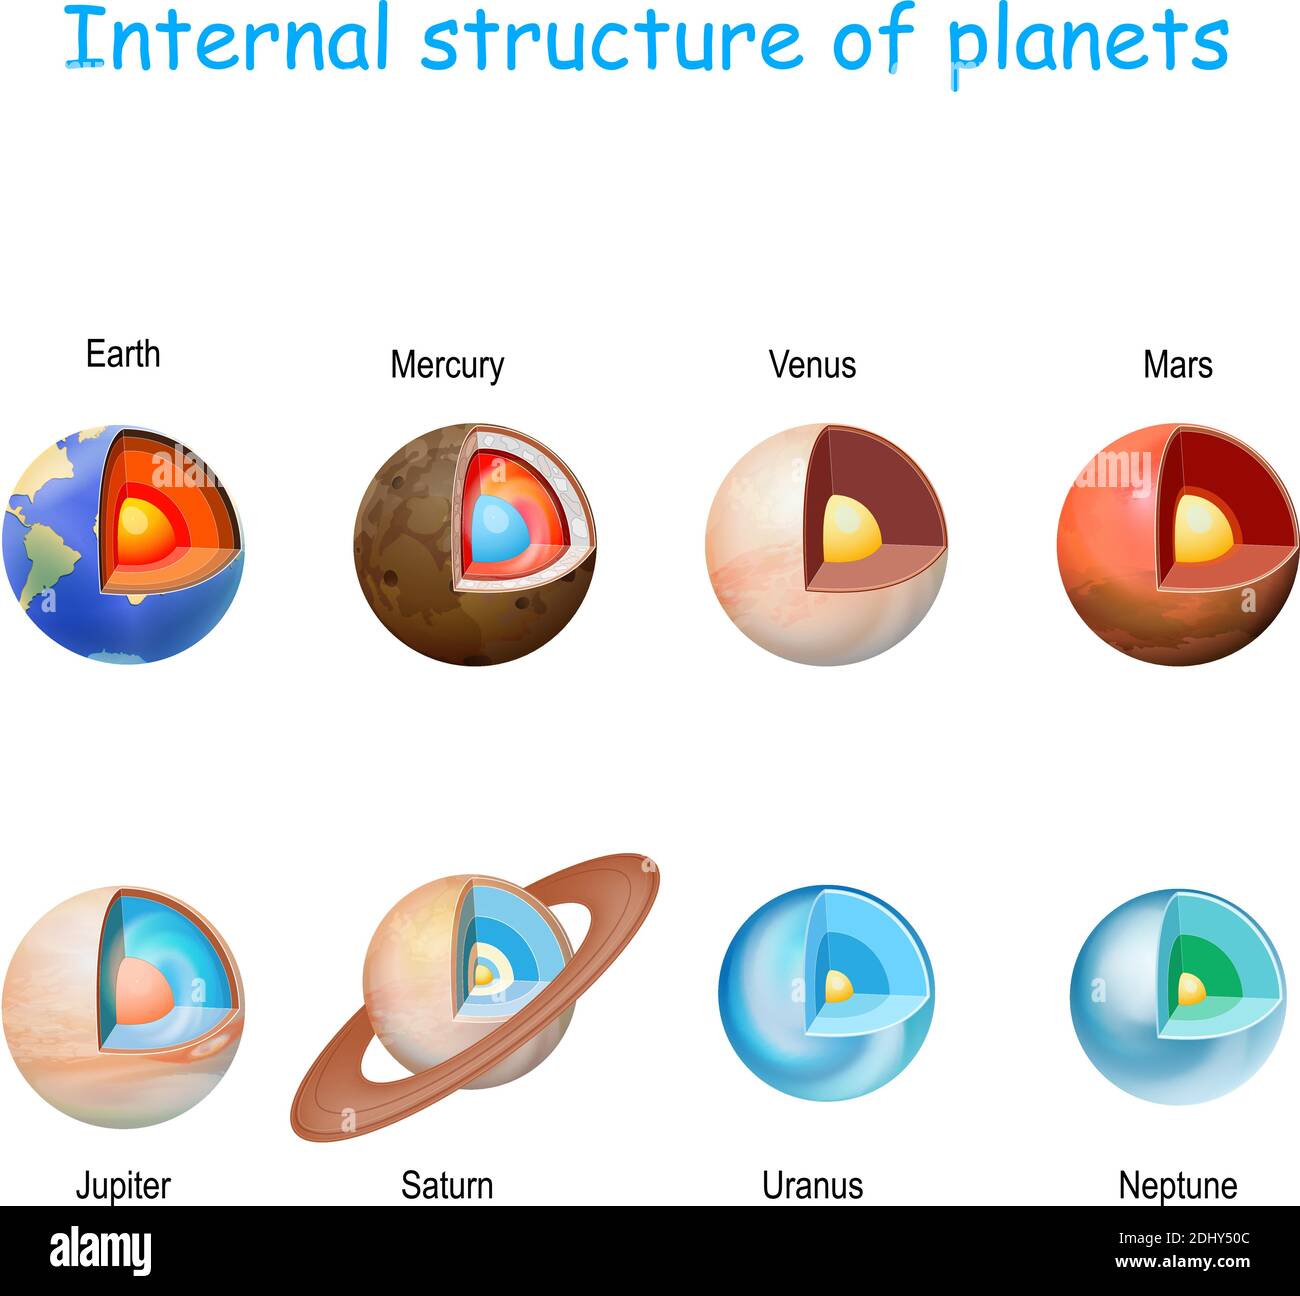 struttura interna di pianeti dal nucleo al mantello e crosta. Sistema solare. Interno di pianeti terrestri (simili alla Terra): Mercurio, Venere, Terra, Marte Illustrazione Vettoriale